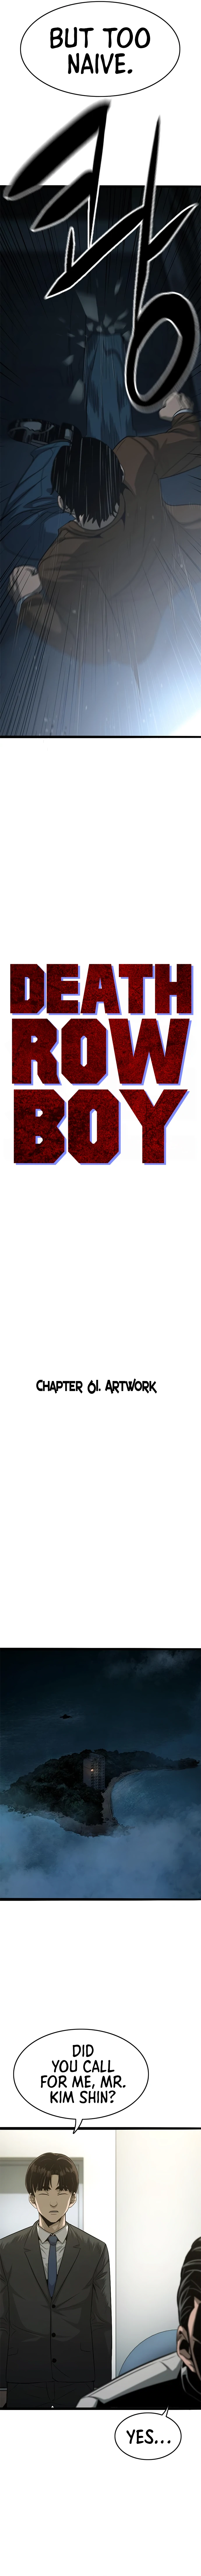 Death Row Boy Chapter Death Row Boy Ch.61 Page 19 - Mangago